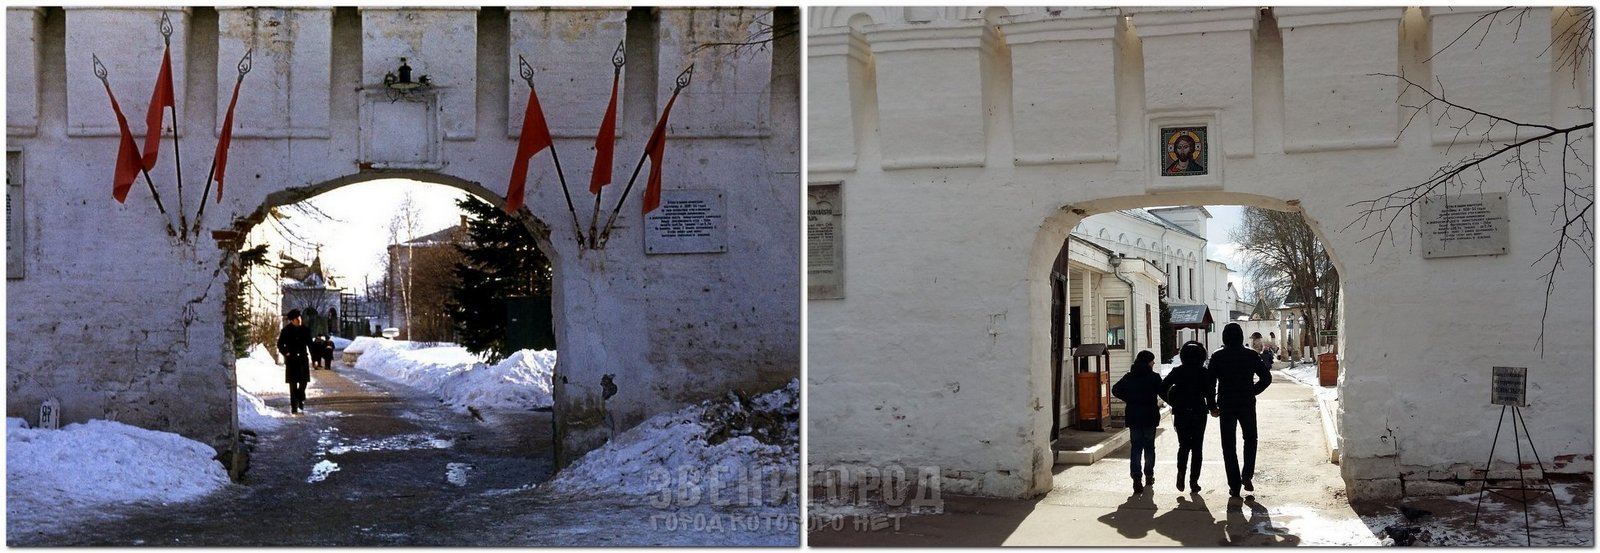 Северные ворота Саввино-Сторожевского монастыря. Слева 1972 или 1973 год. Автор фото С.А. Нечаев. Справа весна 2017 года